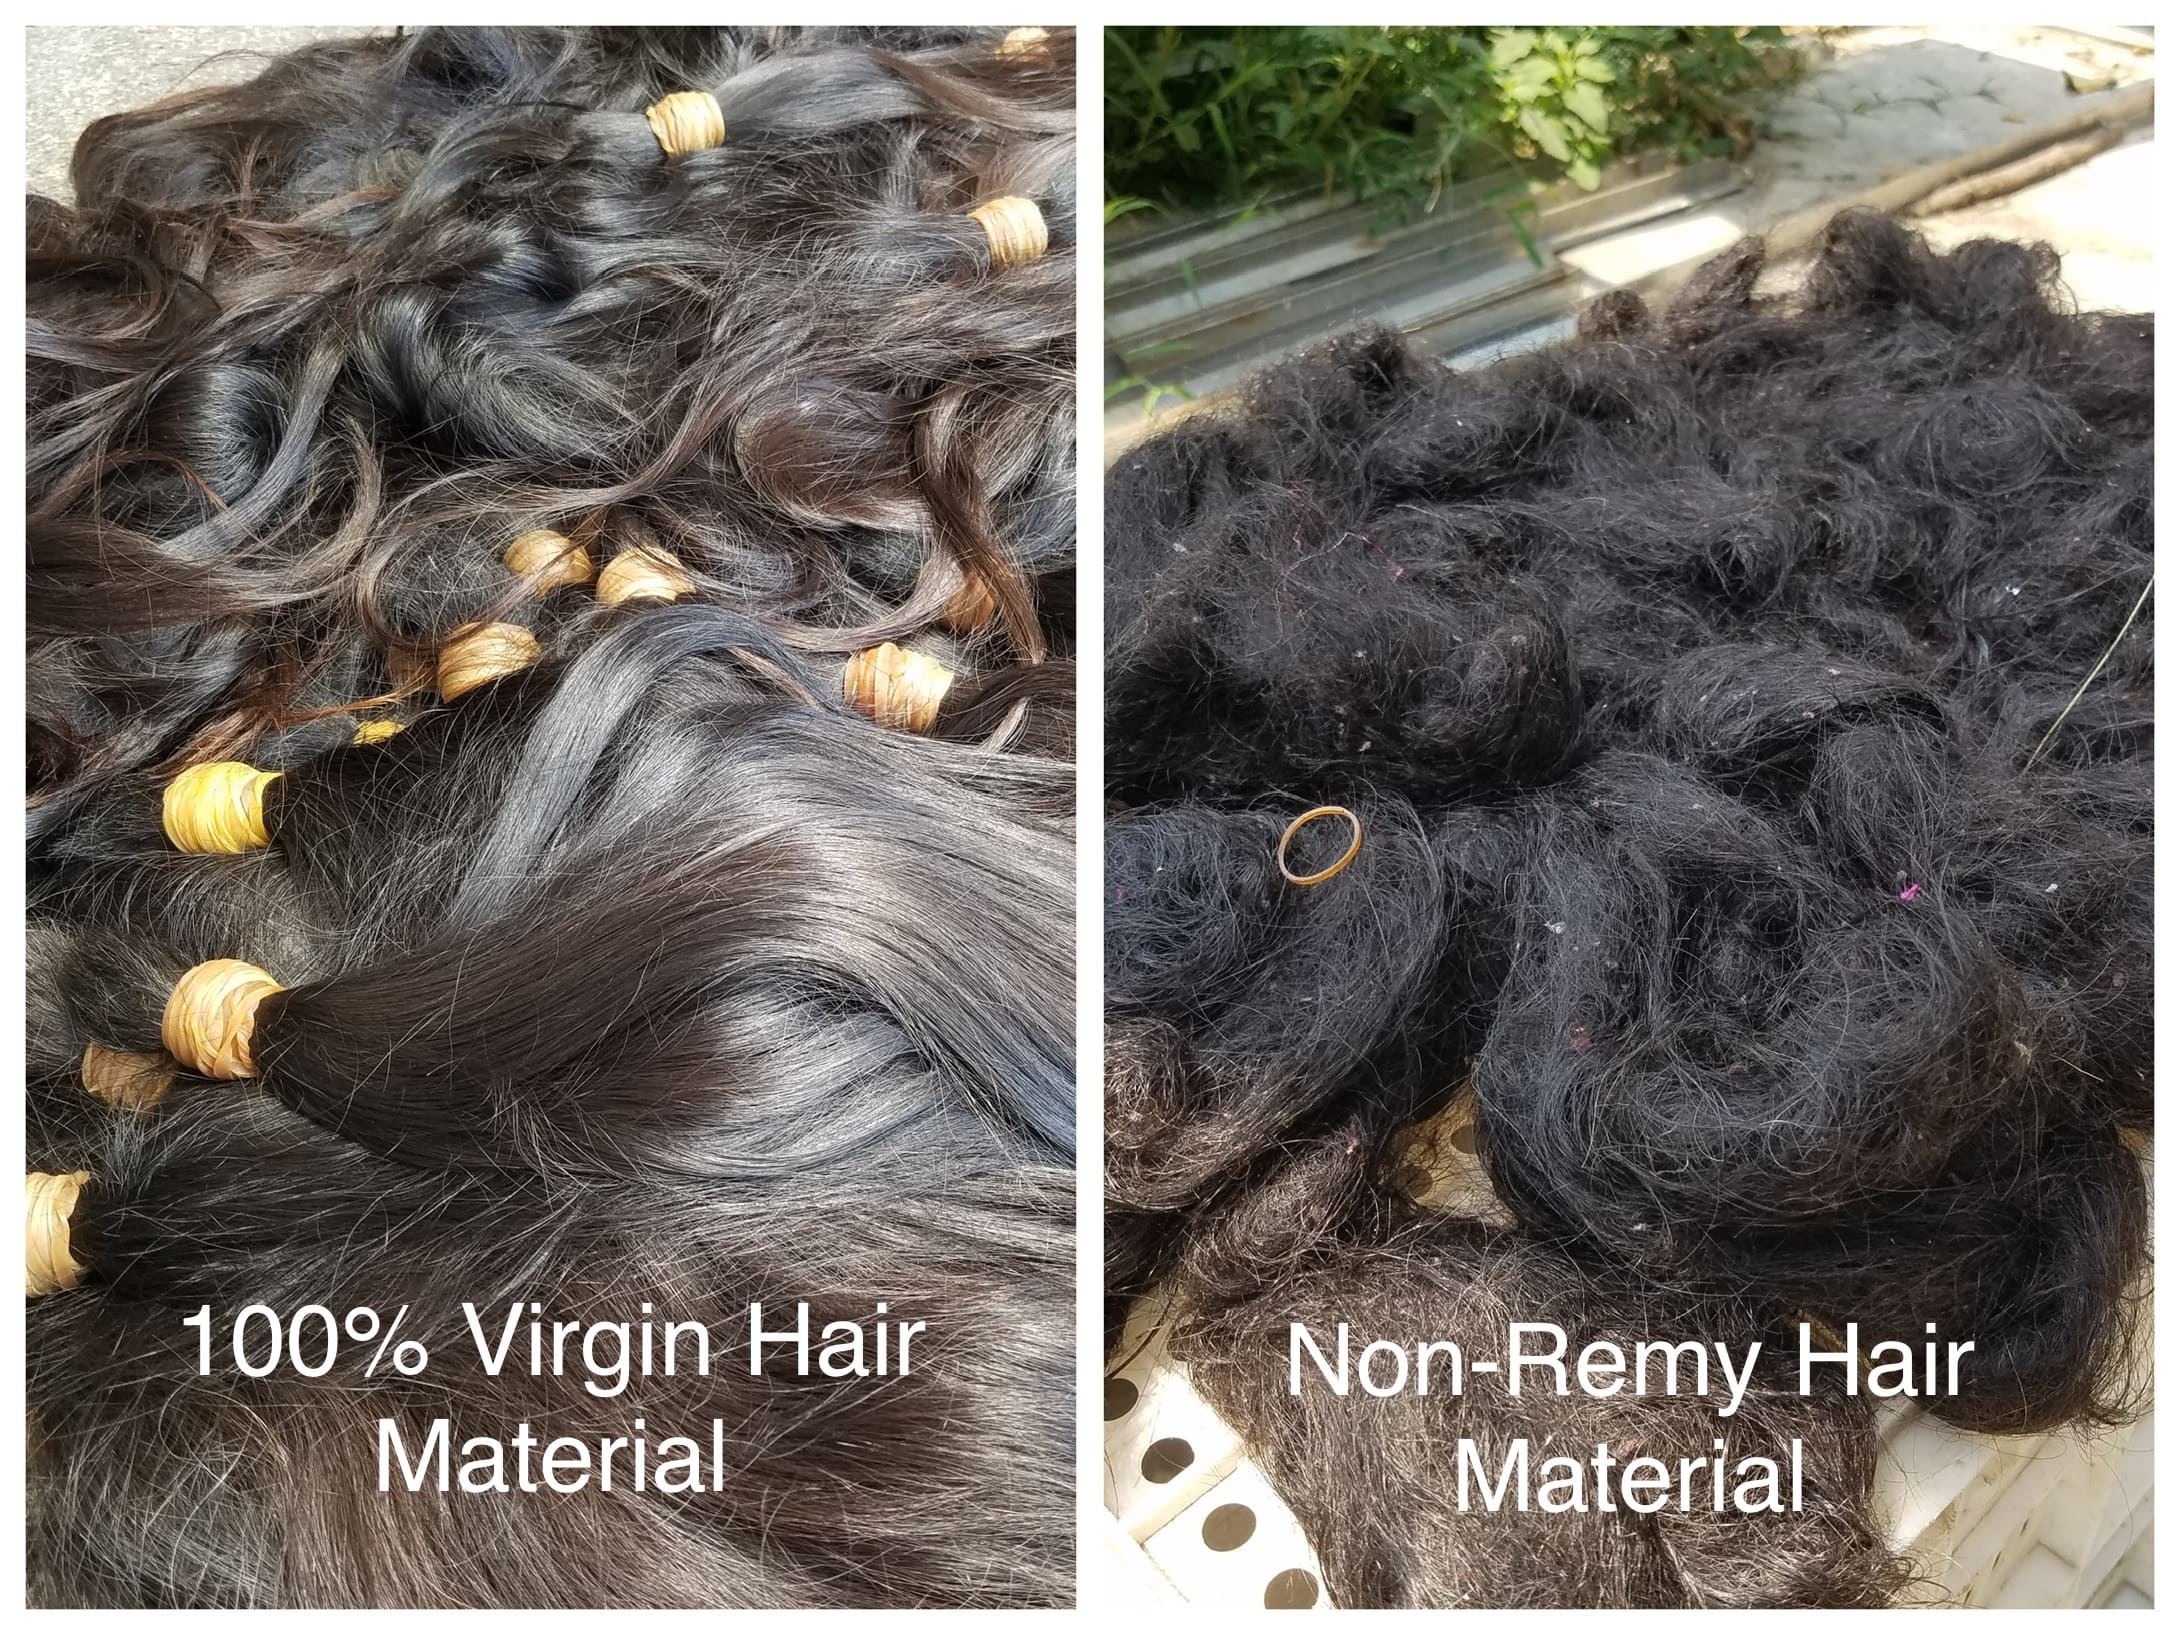 100% virgin hair material VS Non-Remy Hair Material